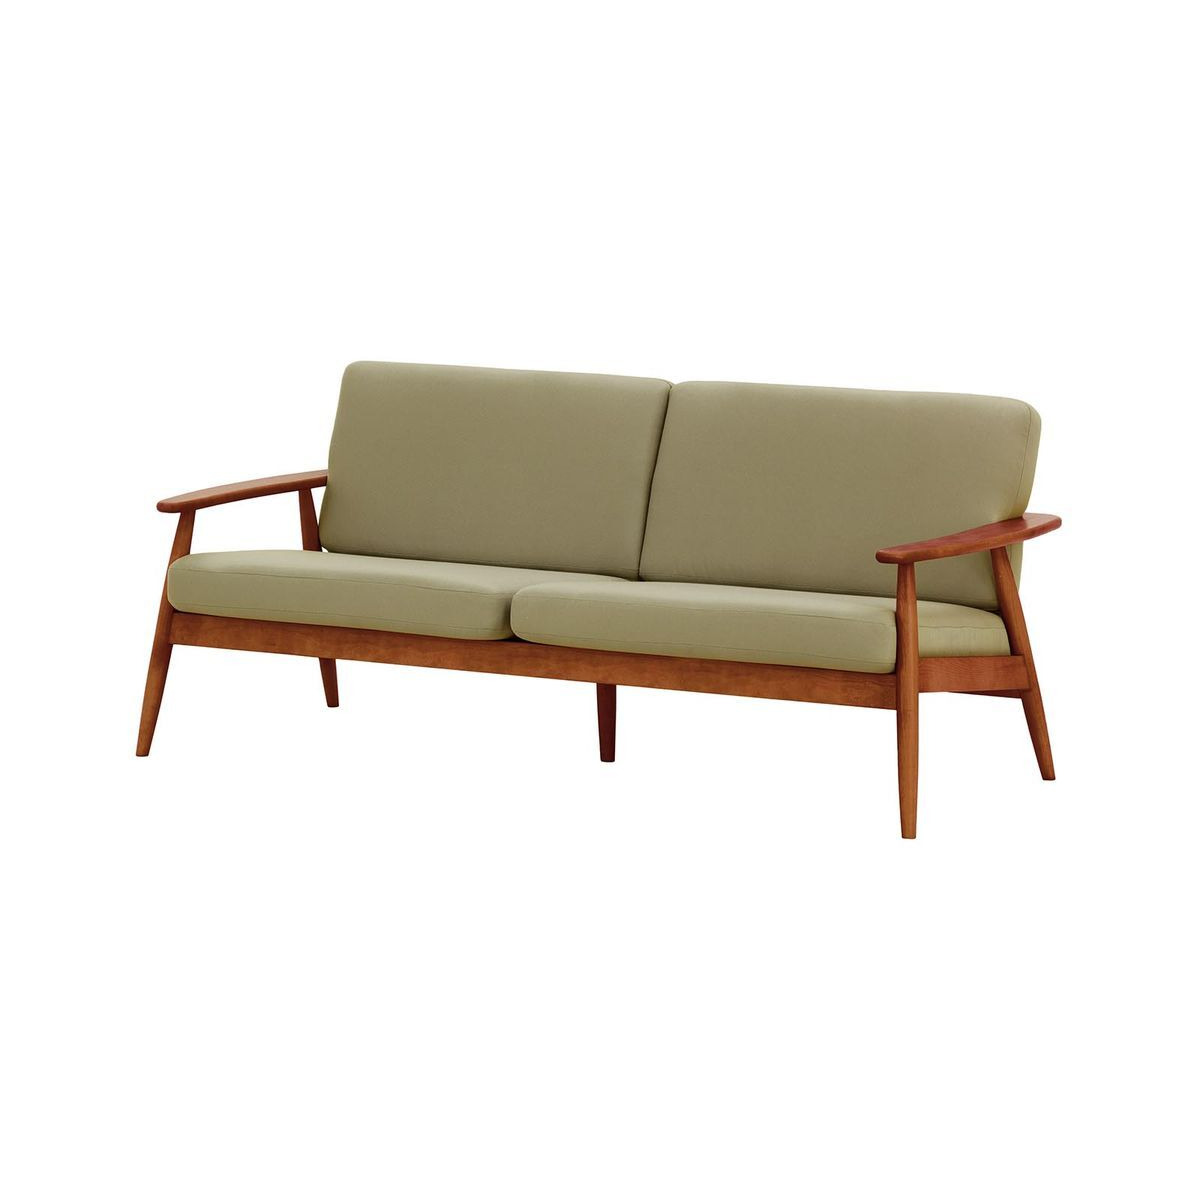 Demure Aqua 3 Seater Garden Sofa, beige, Leg colour: 8011 aveo - image 1